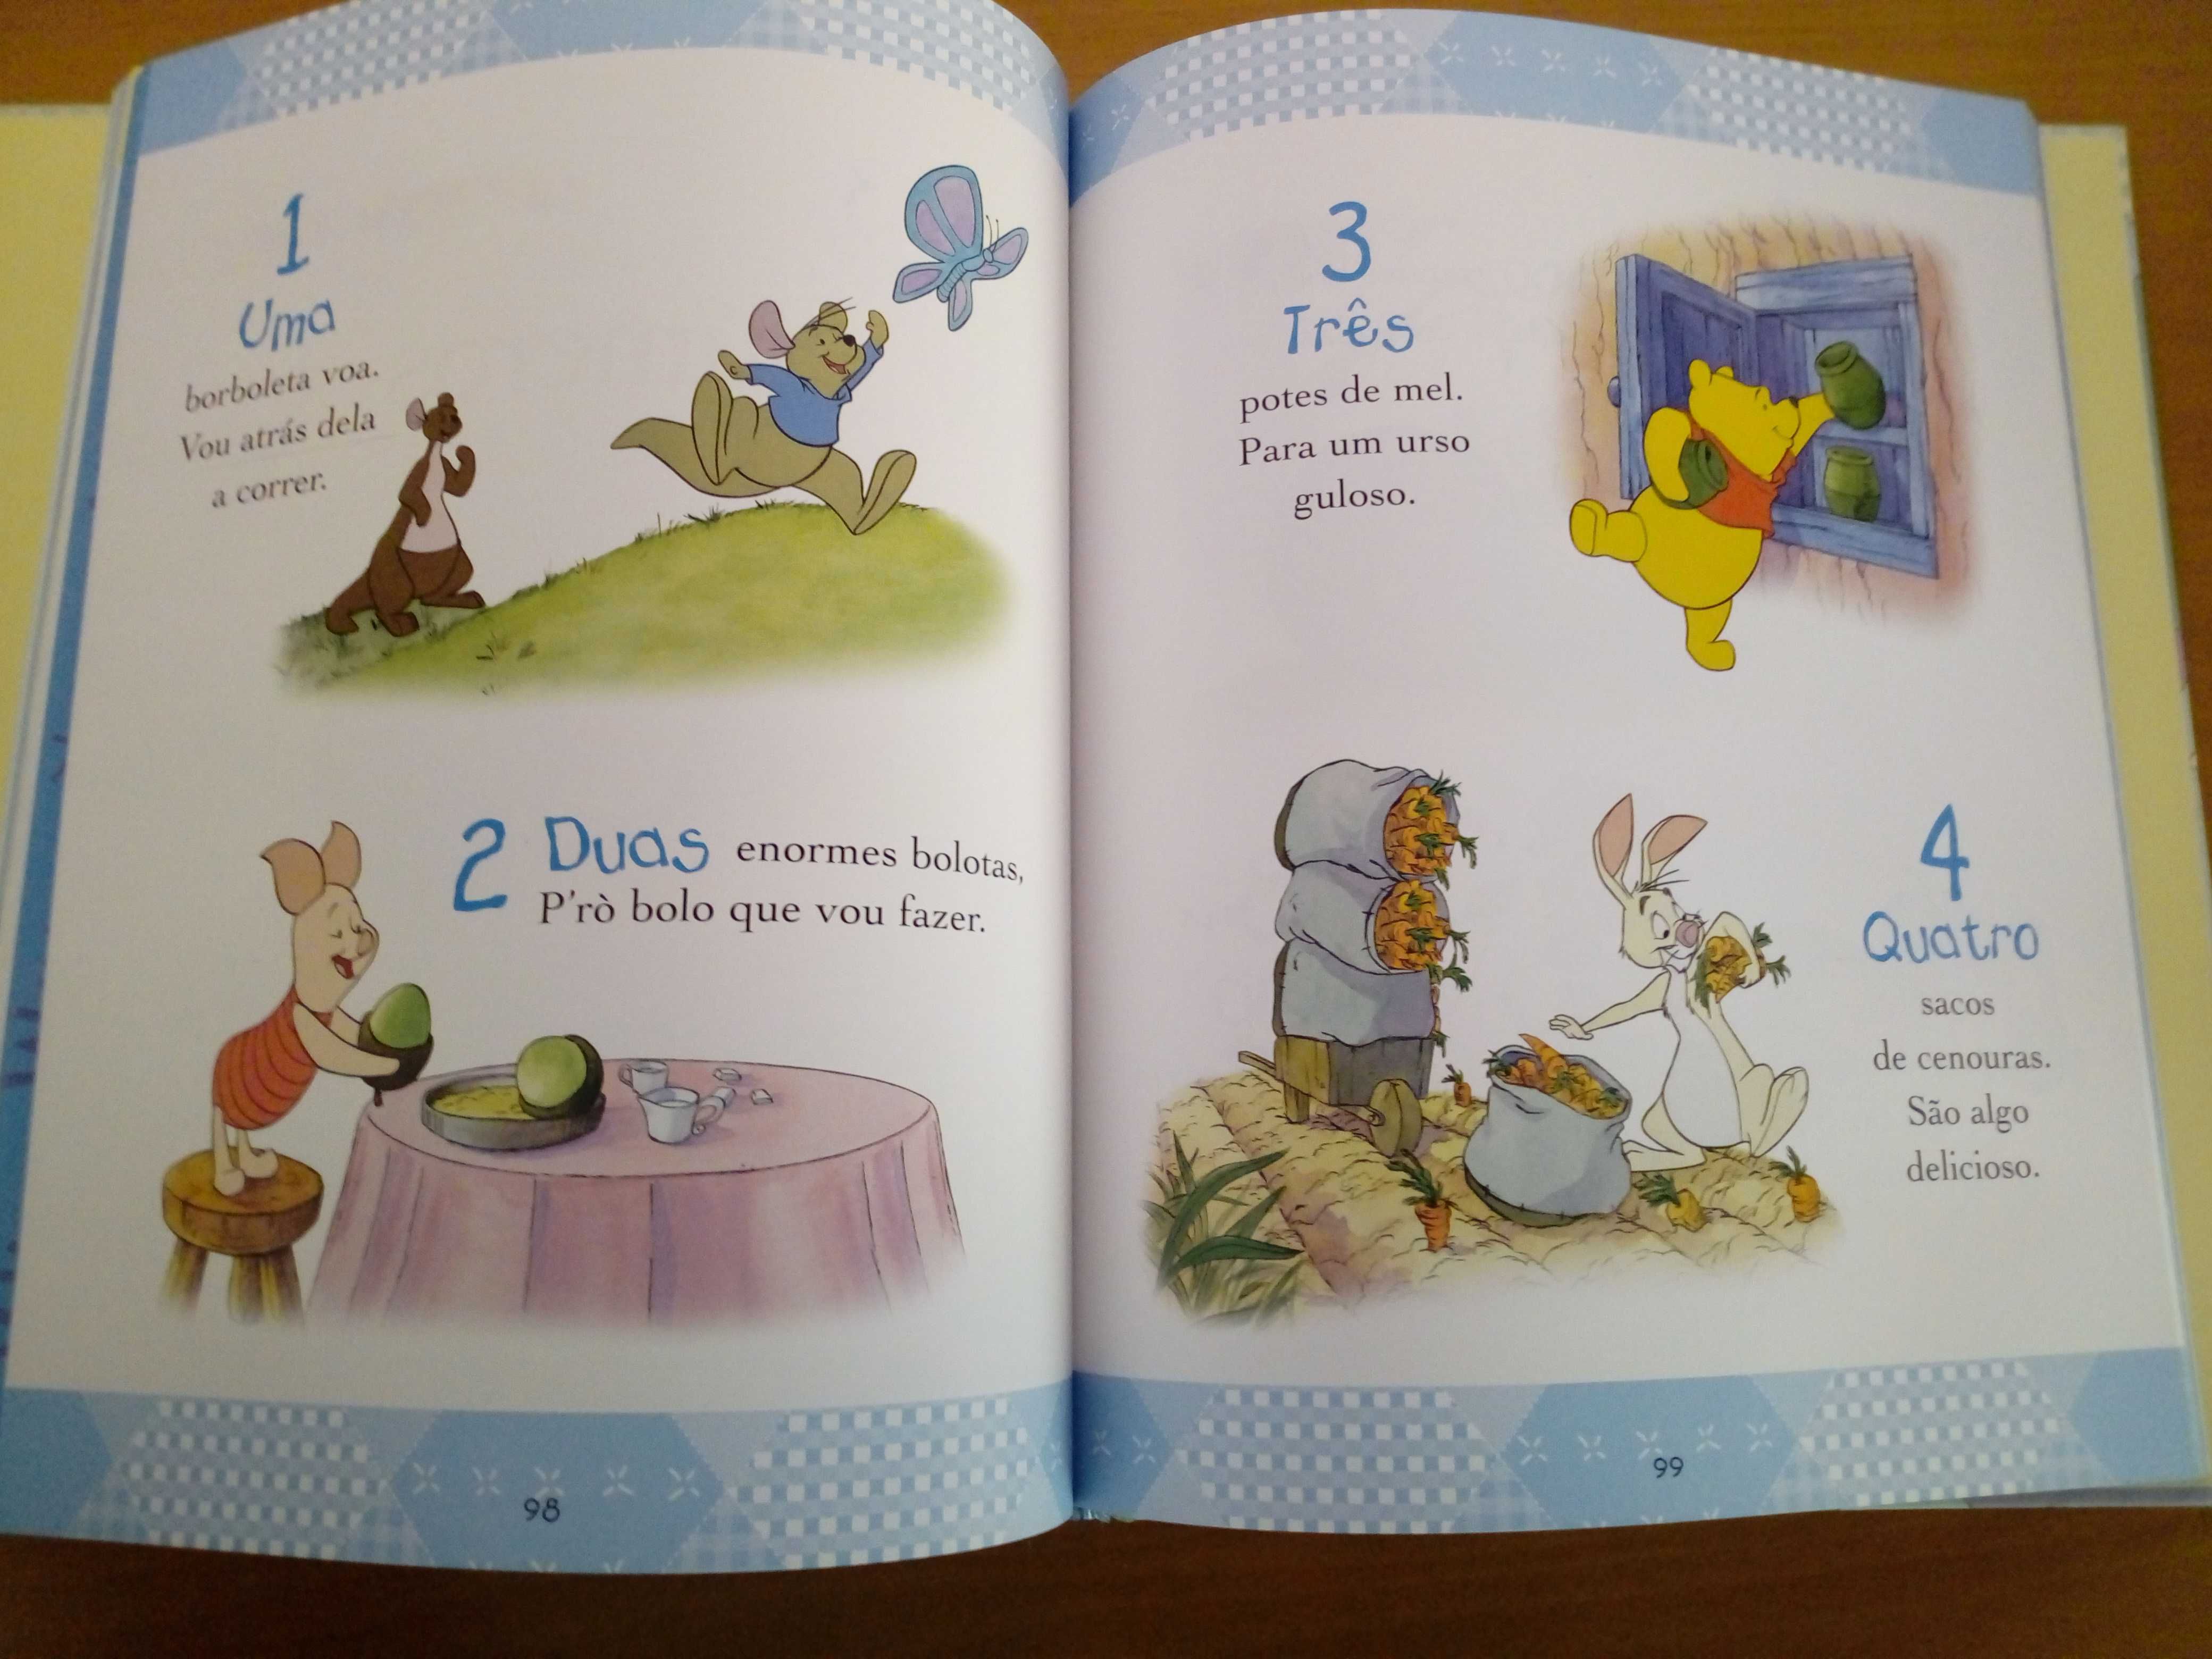 Livro Infantil  "O Meu Bebé e Winnie The Pooh"